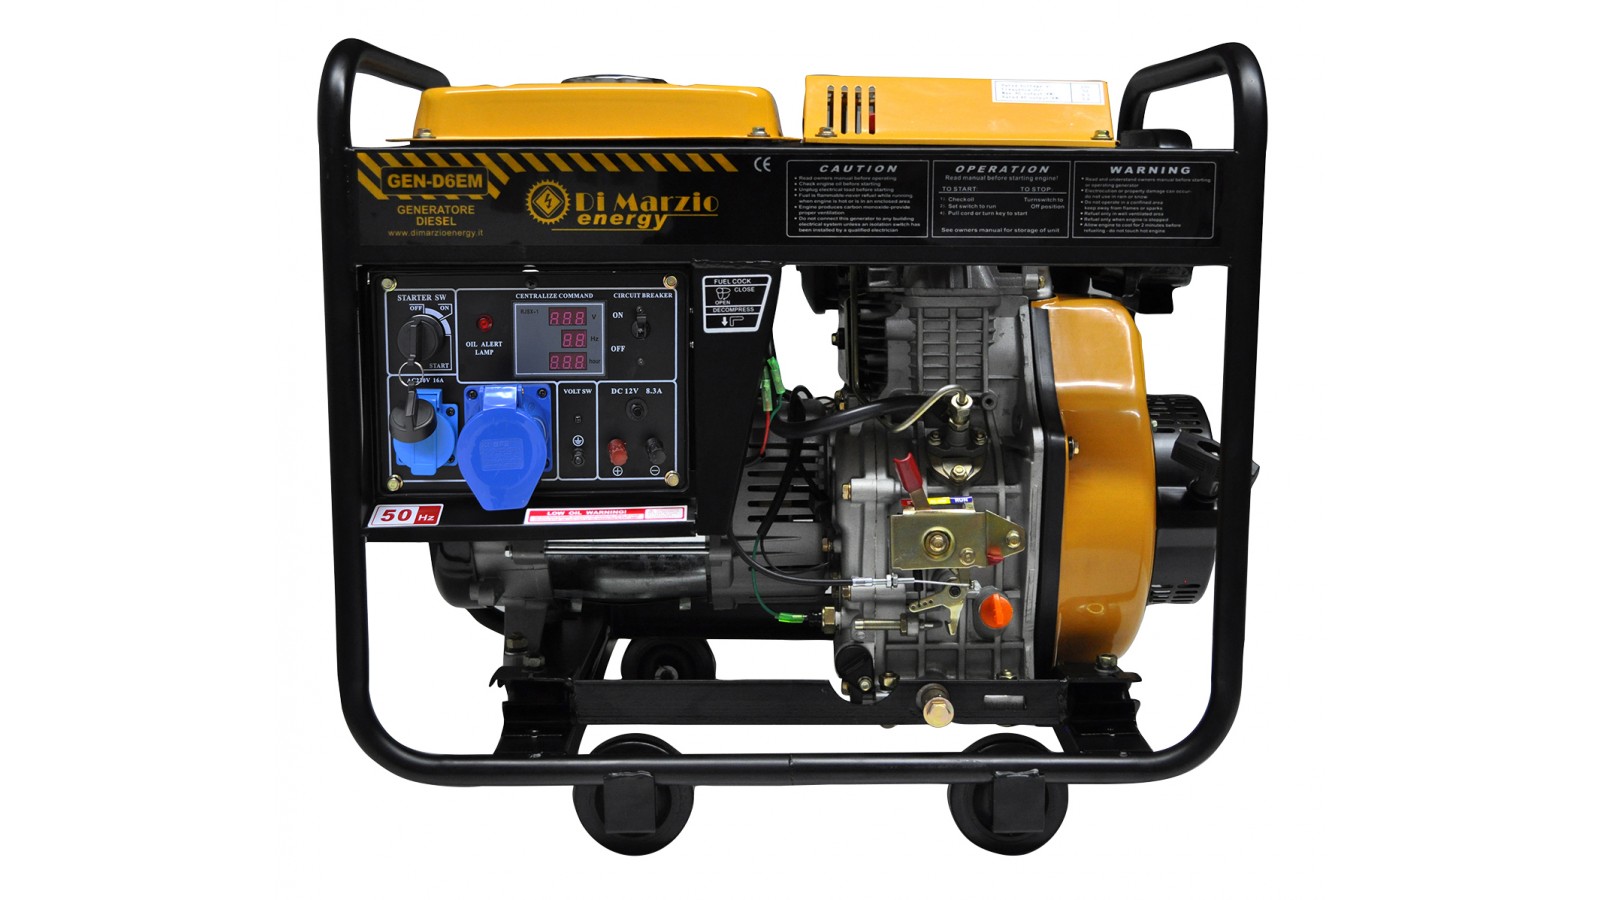 Generatore di corrente Diesel 6 KW - Gruppo elettrogeno avviamento elettrico/manuale